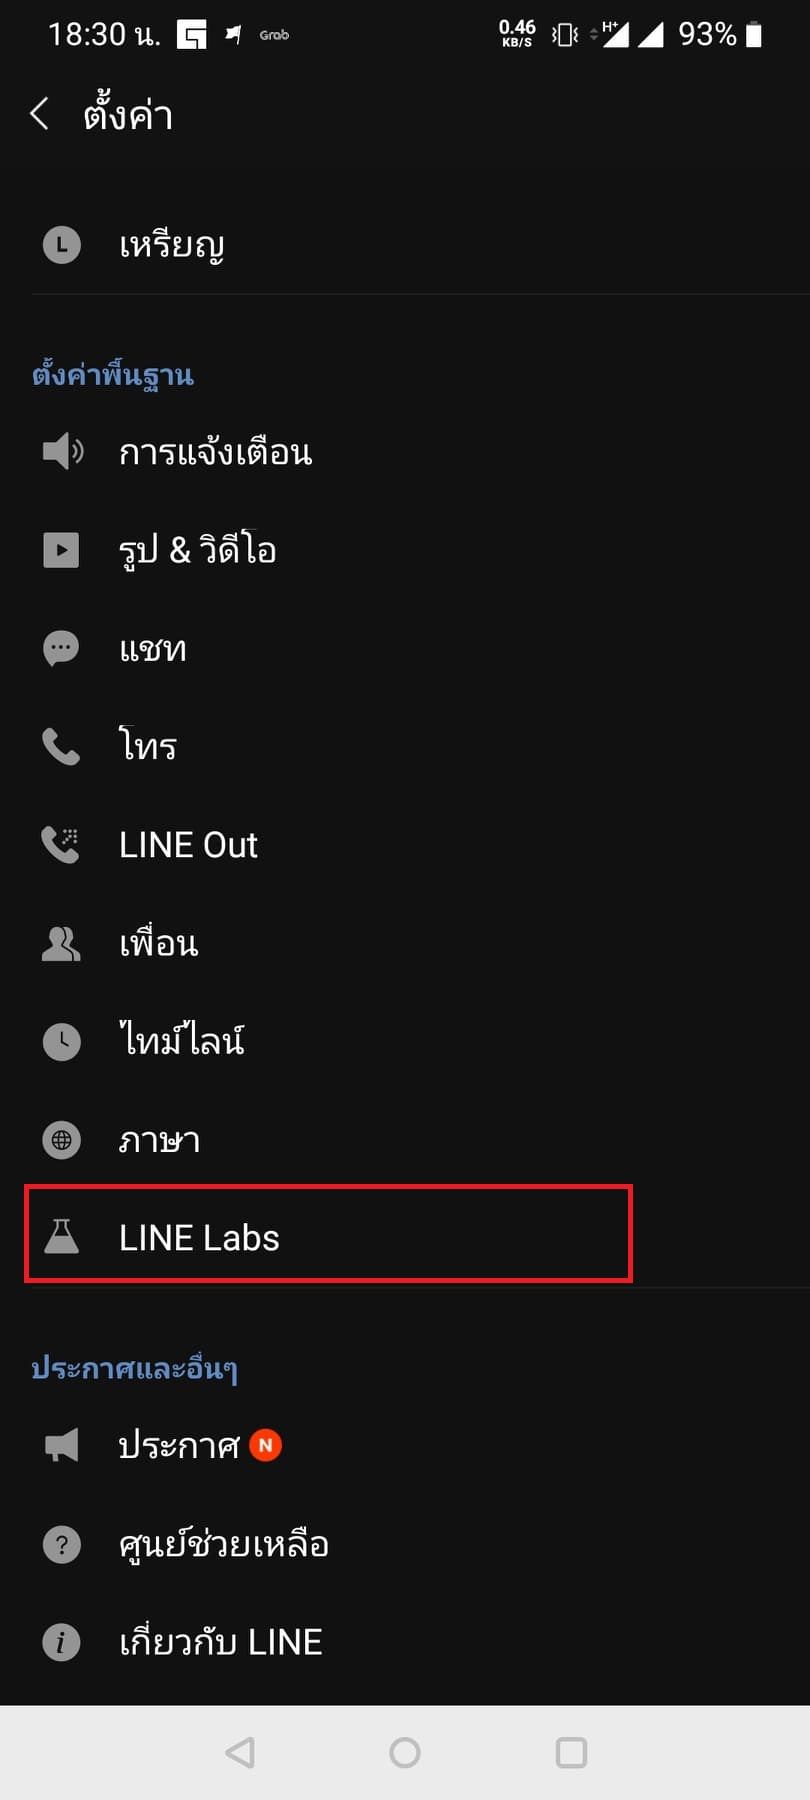 LINE เปิดฟีเจอร์ใหม่ Silent Messaging ส่งข้อความโดยผู้รับจะไม่ได้การแจ้งเตือน